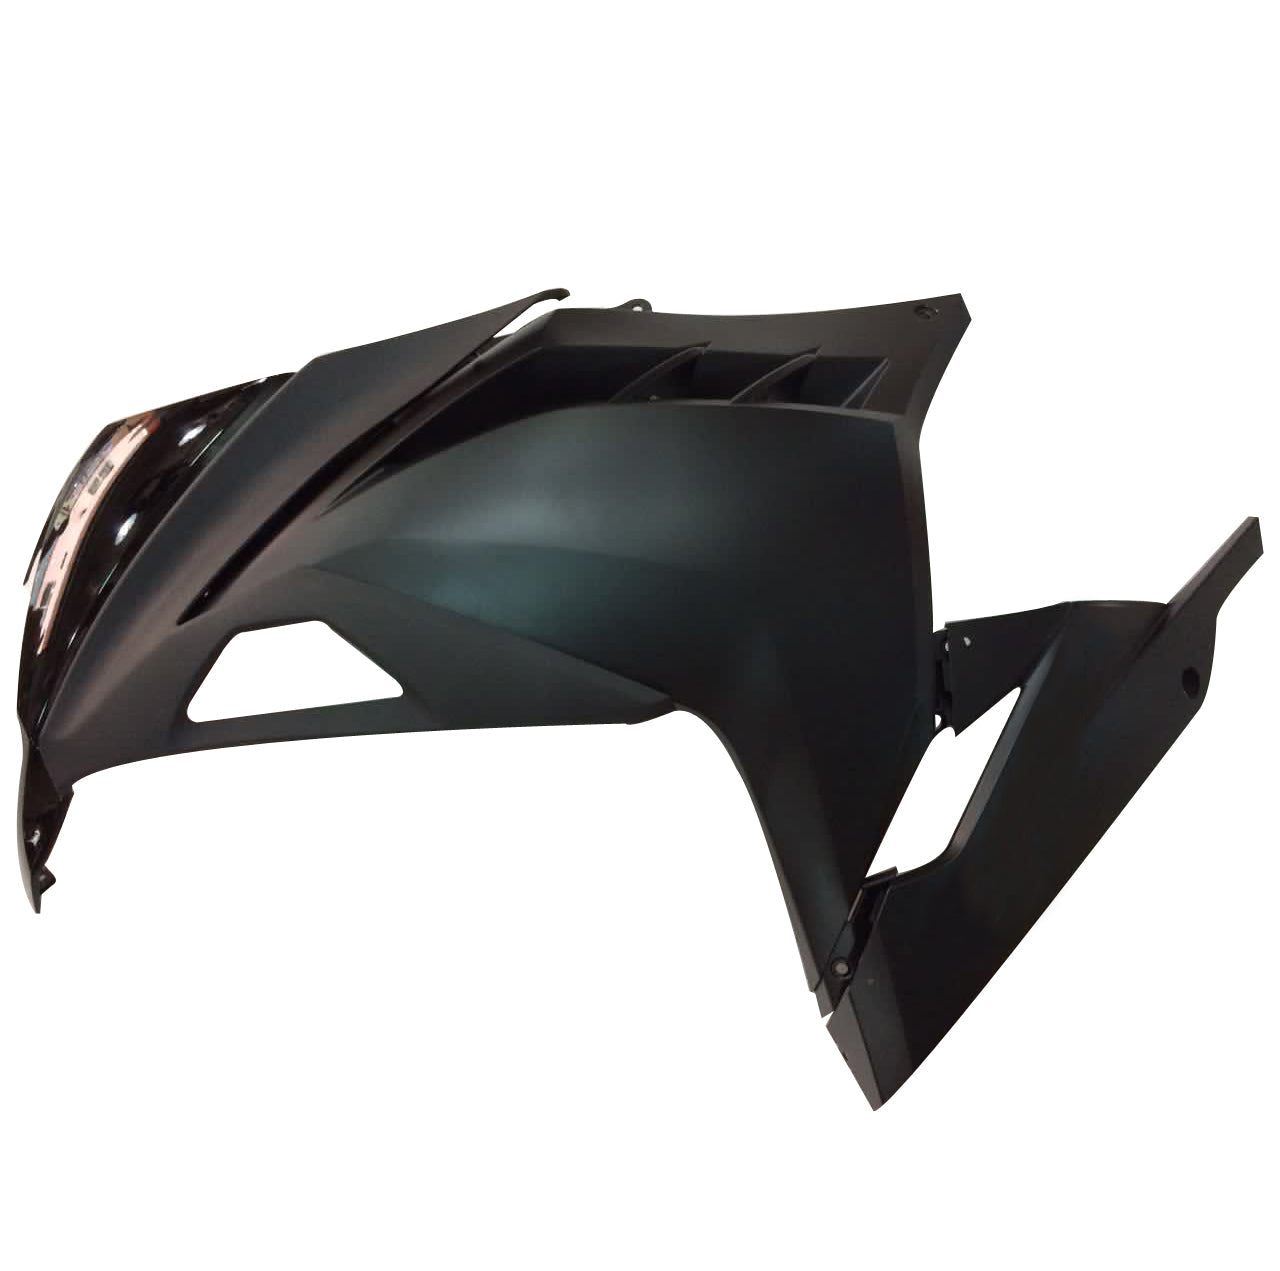 for-ninja-300r-ex300r-2013-2015-black-bodywork-fairing-abs-injection-molded-plastic-3